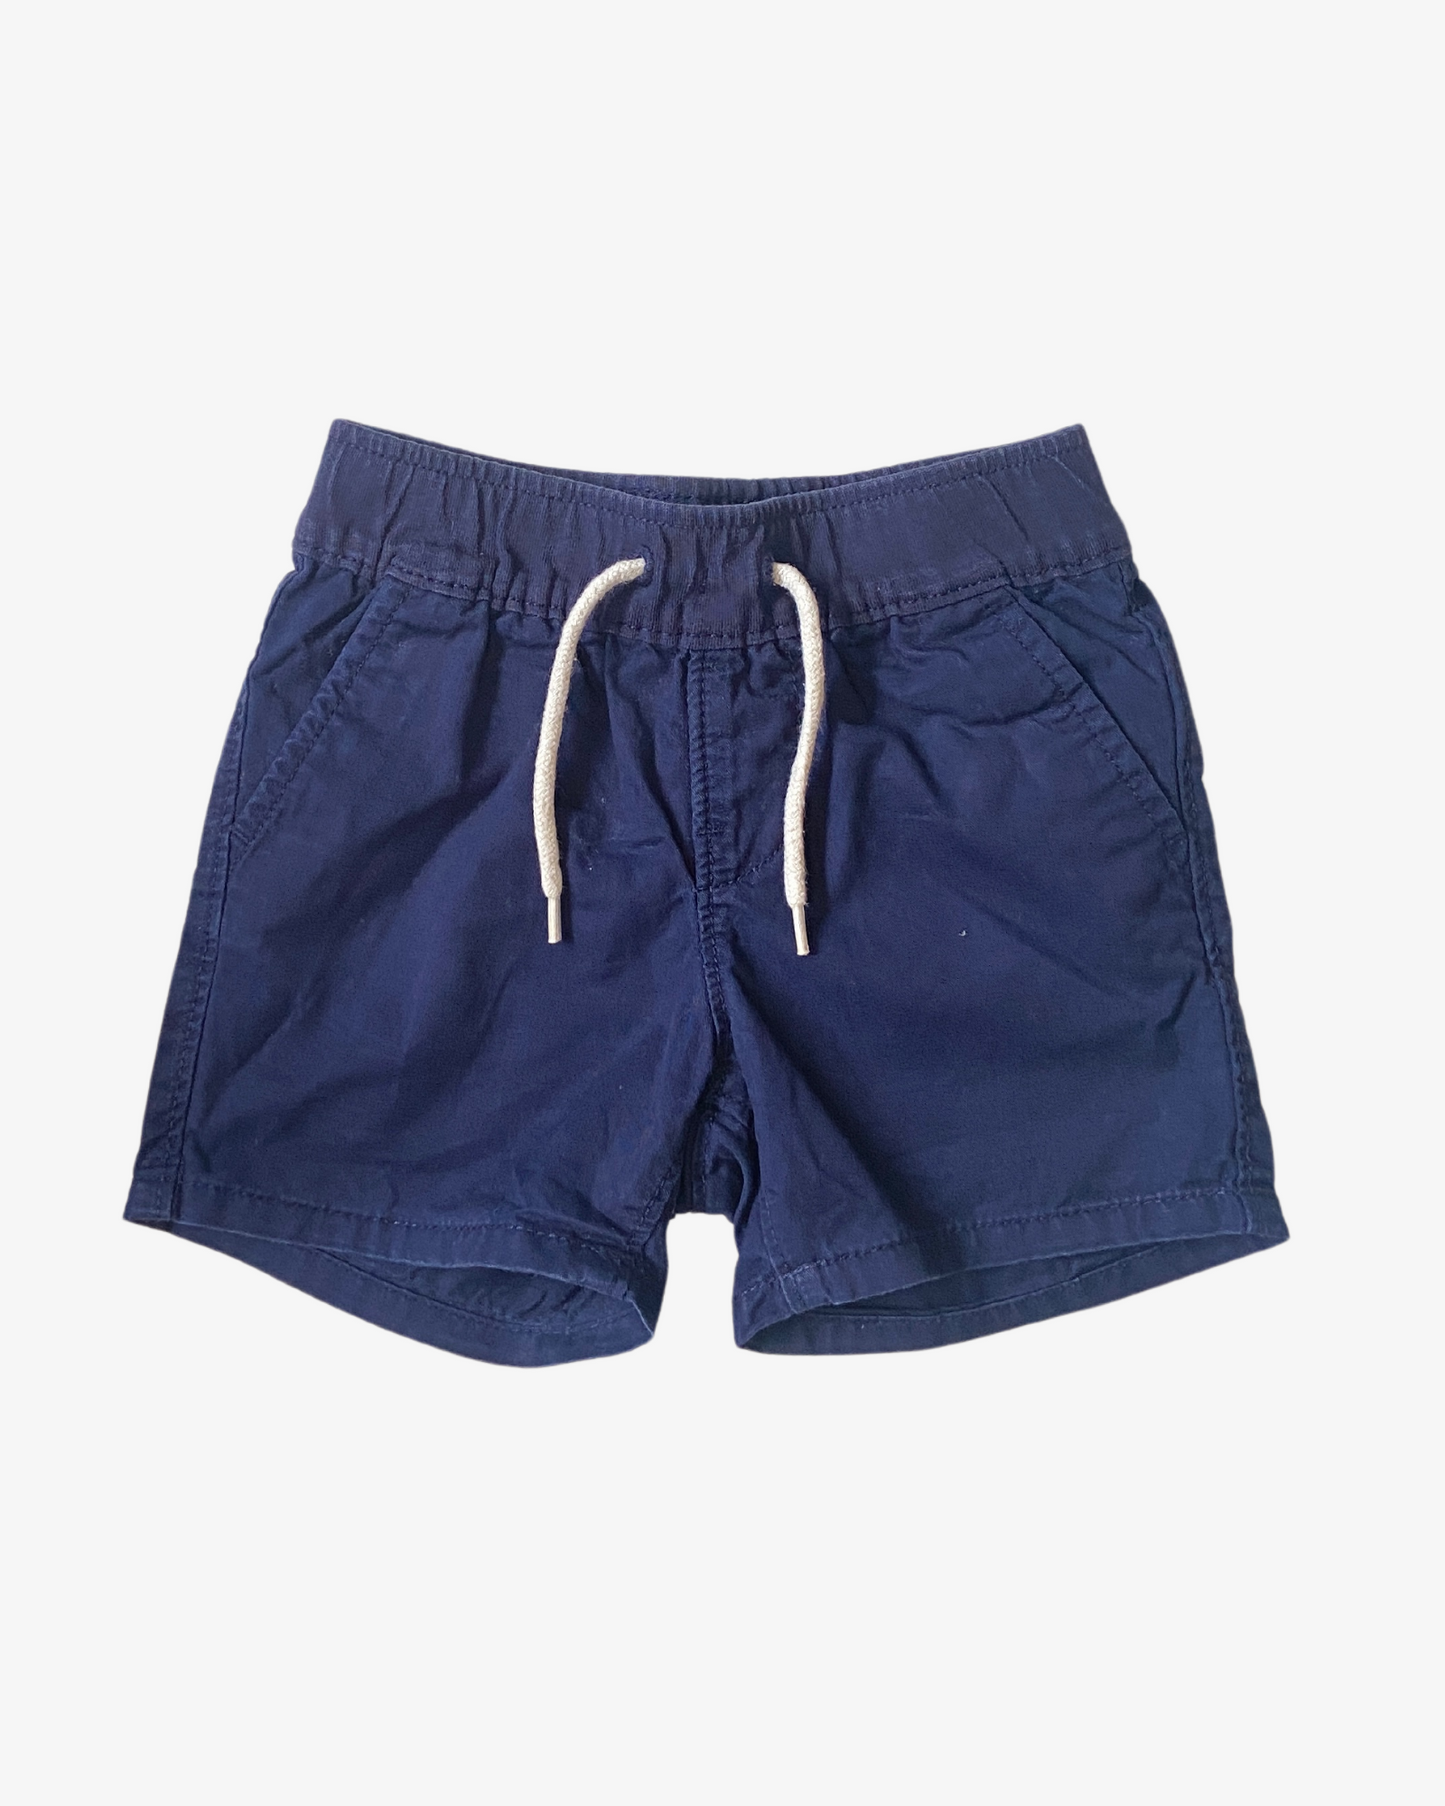 6-12 M Navy shorts